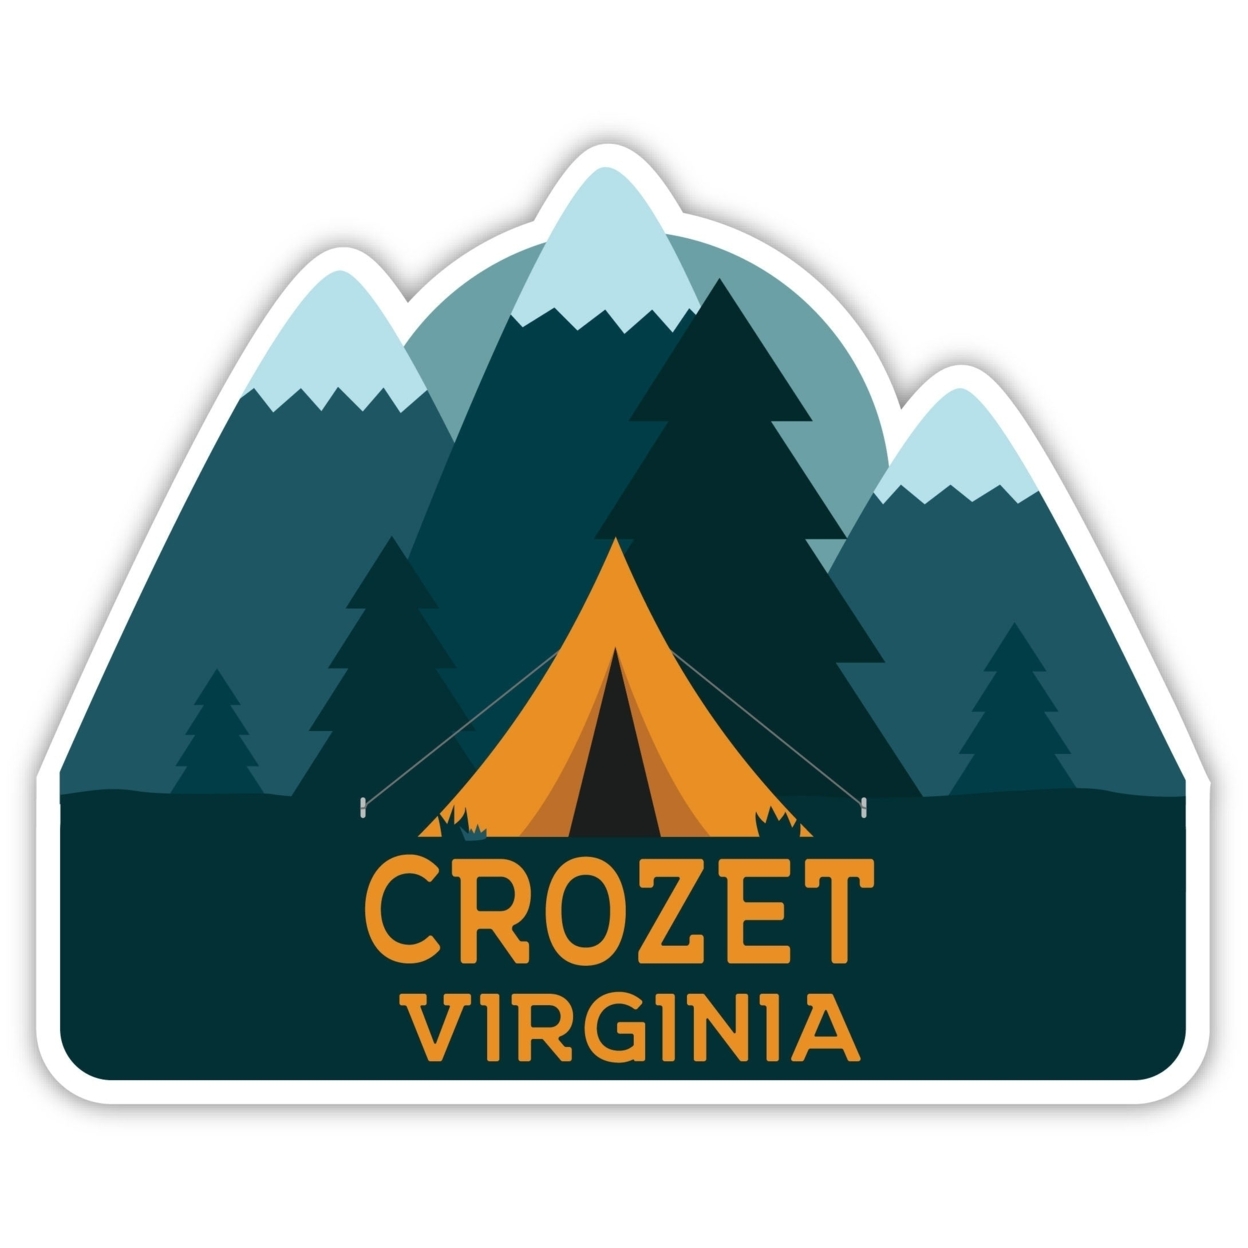 Crozet Virginia Souvenir Decorative Stickers (Choose Theme And Size) - Single Unit, 8-Inch, Tent